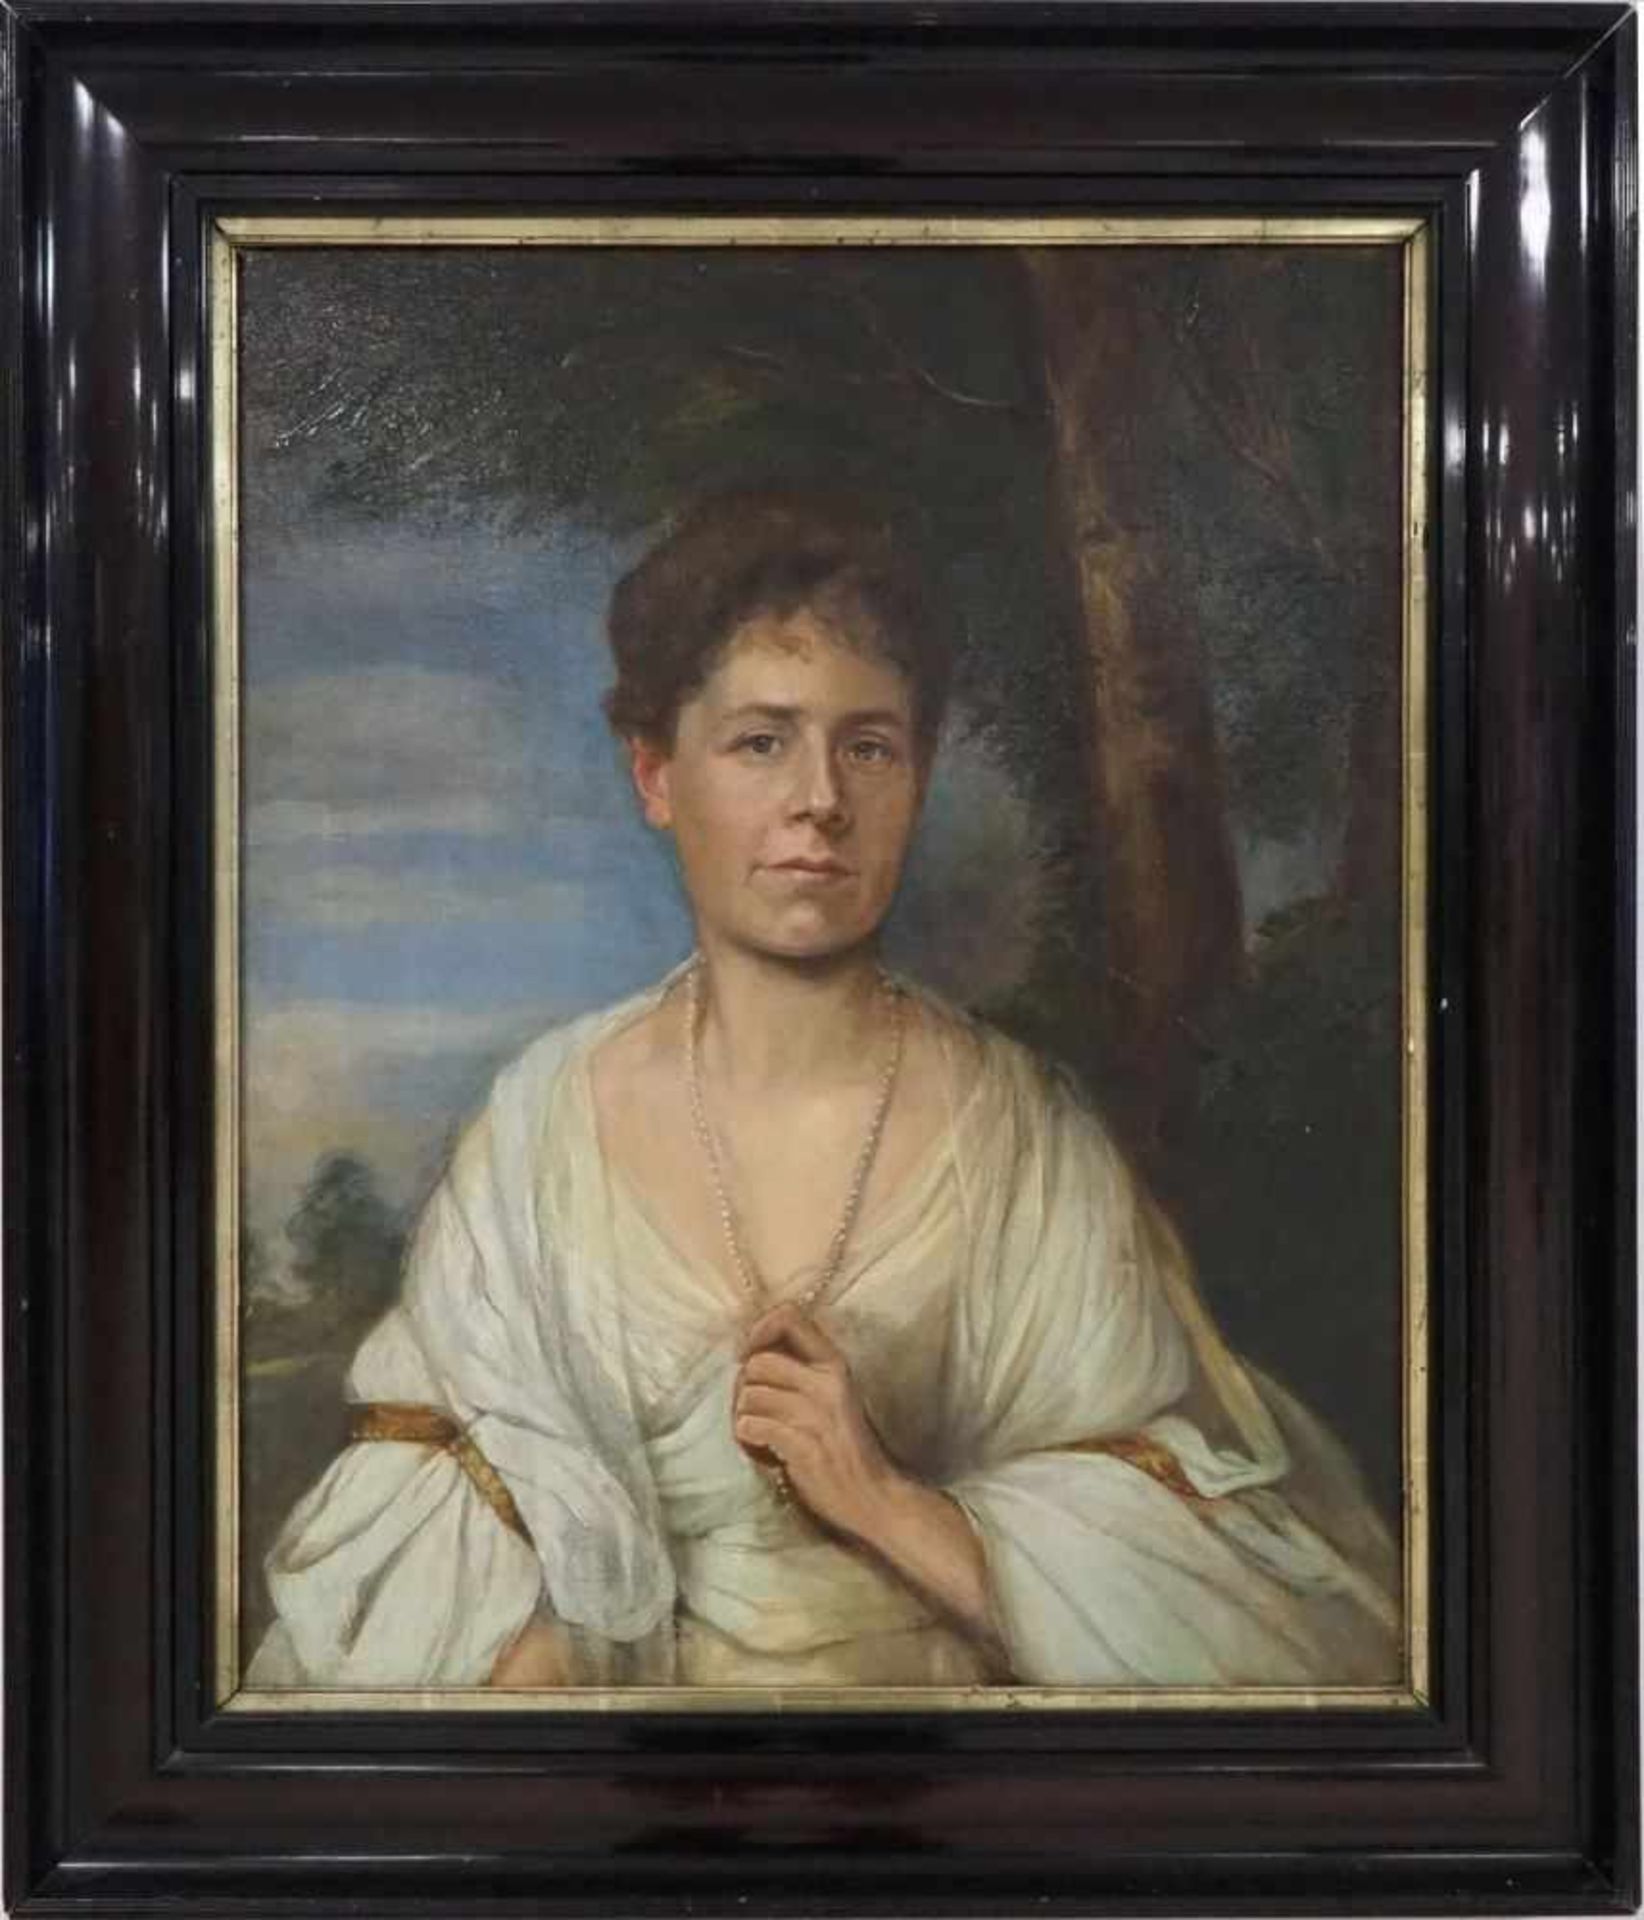 Ölgemälde meisterliches Porträt einer DameÖl auf Leinwand, mit Rahmen. Künstler unbekannt.Maße:97